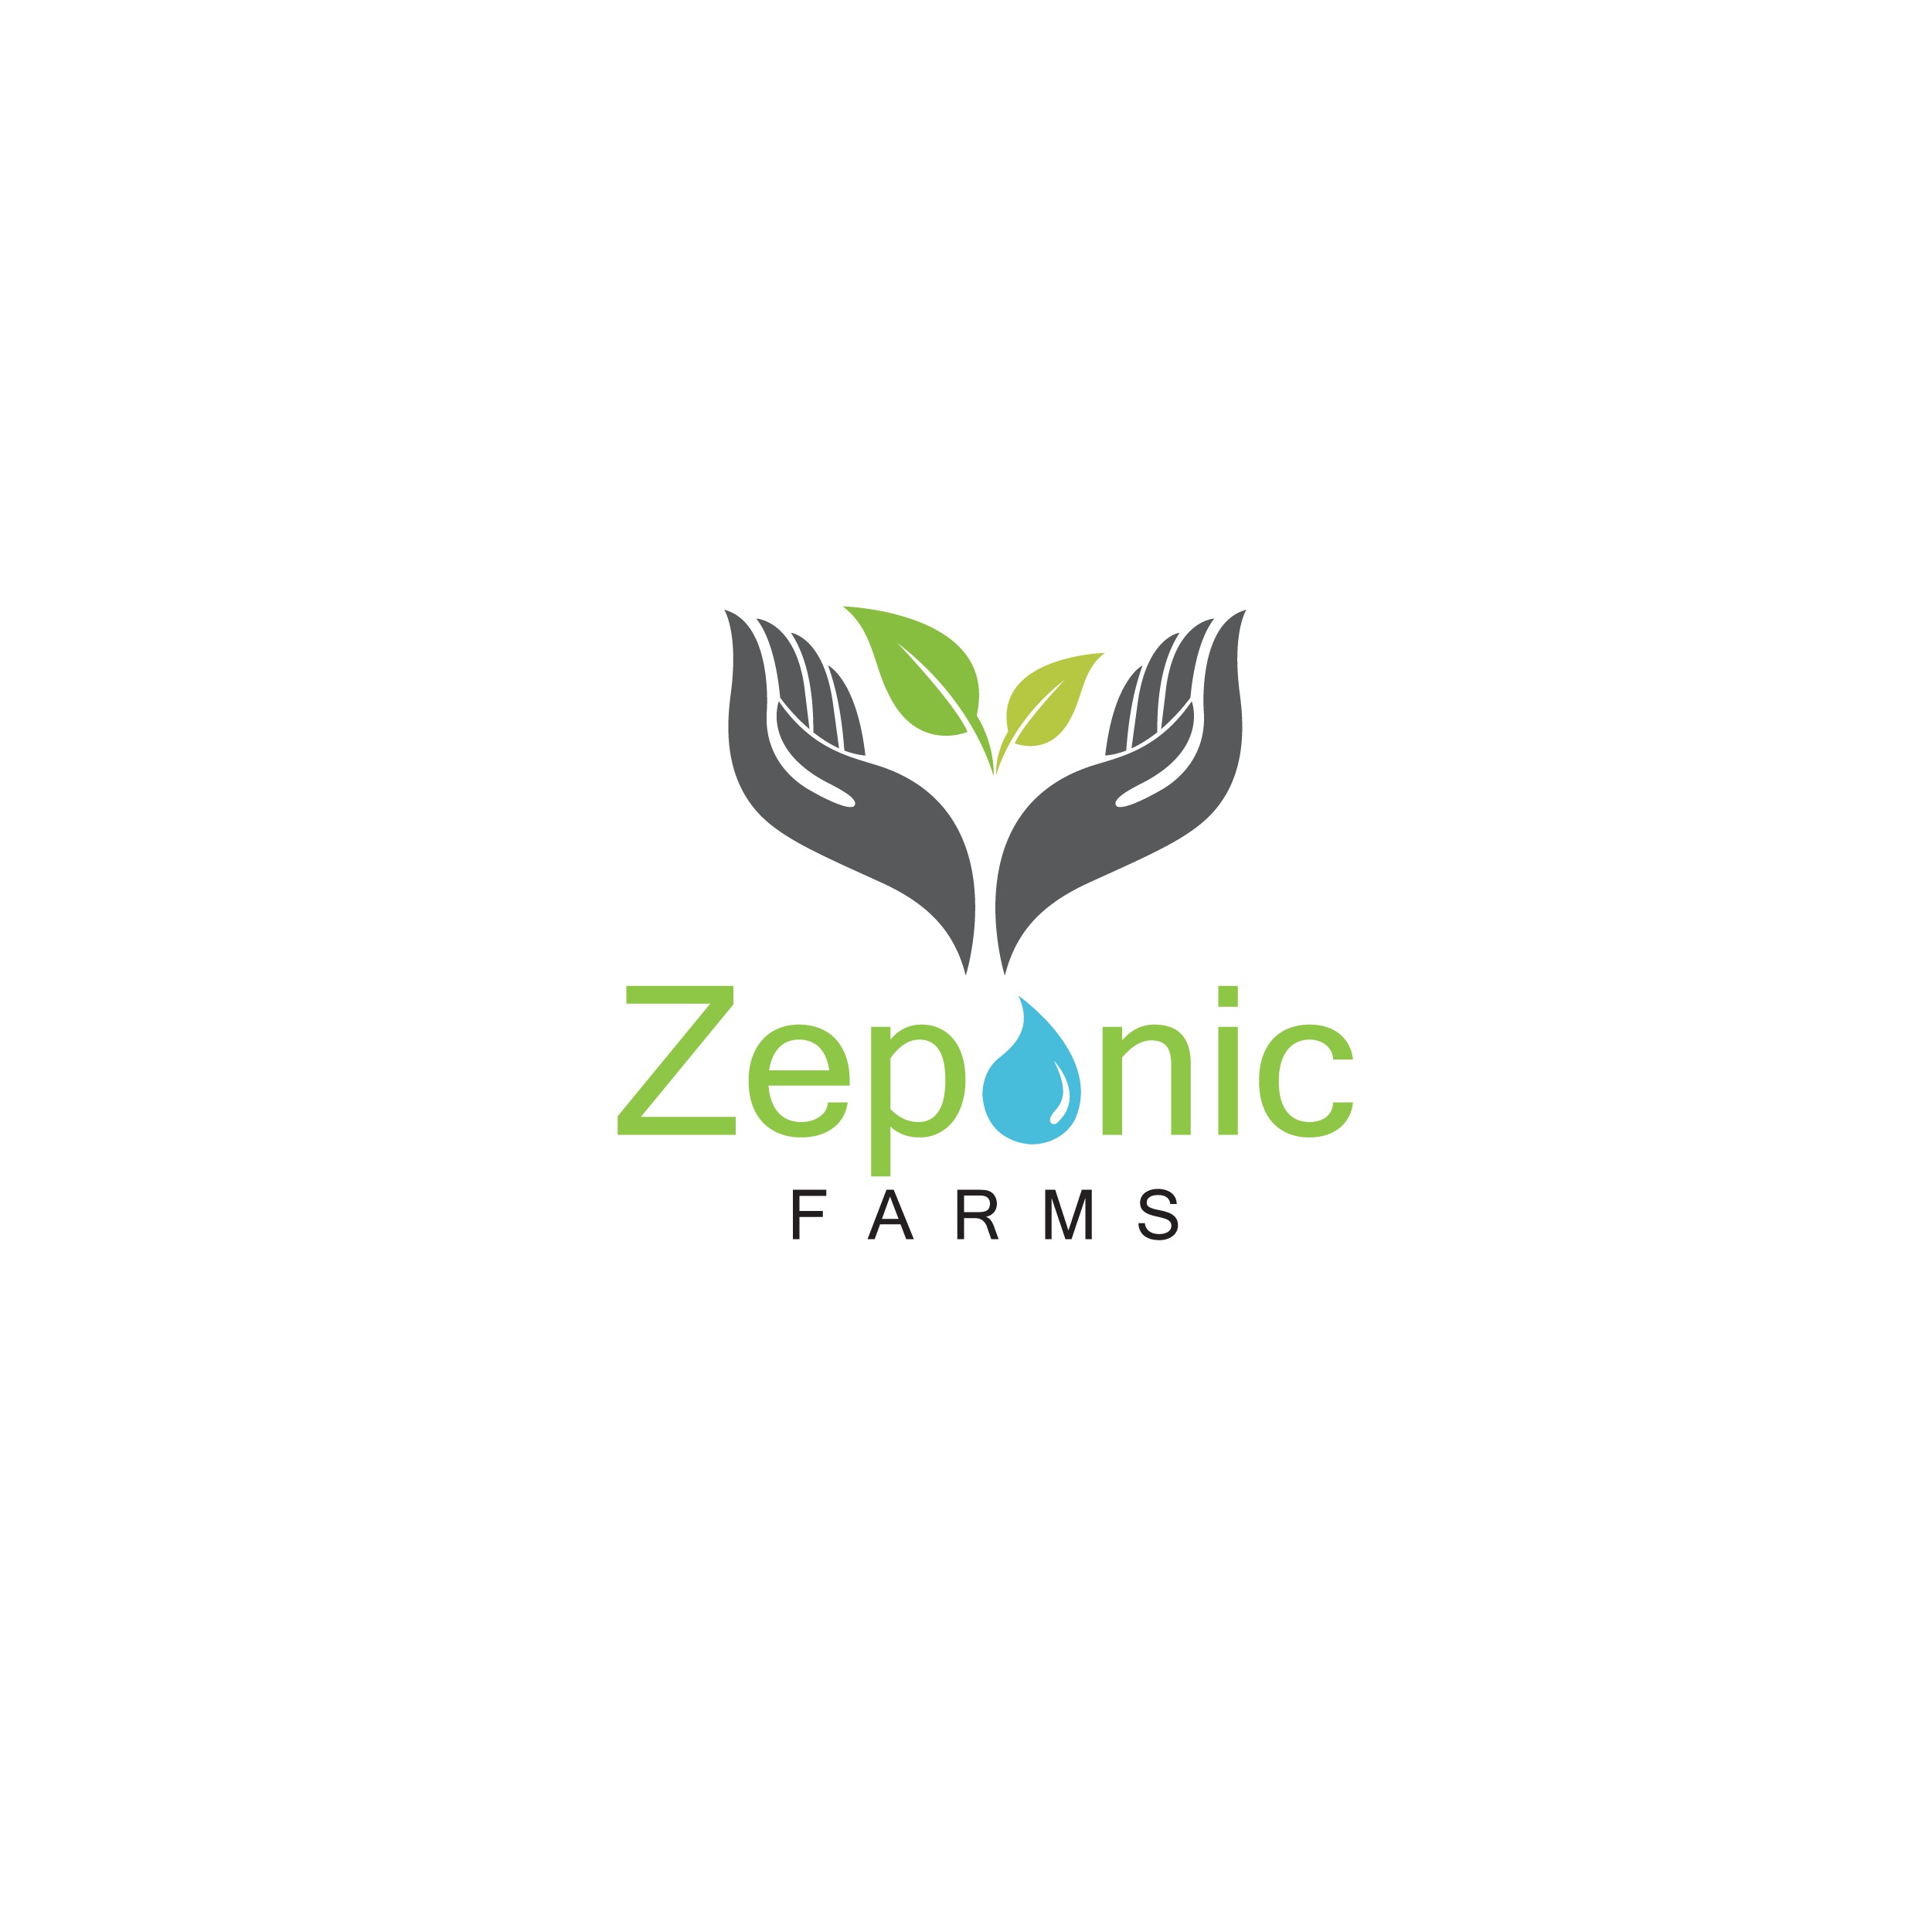 Zeponic_Farms_Full_color_logo-2.jpg